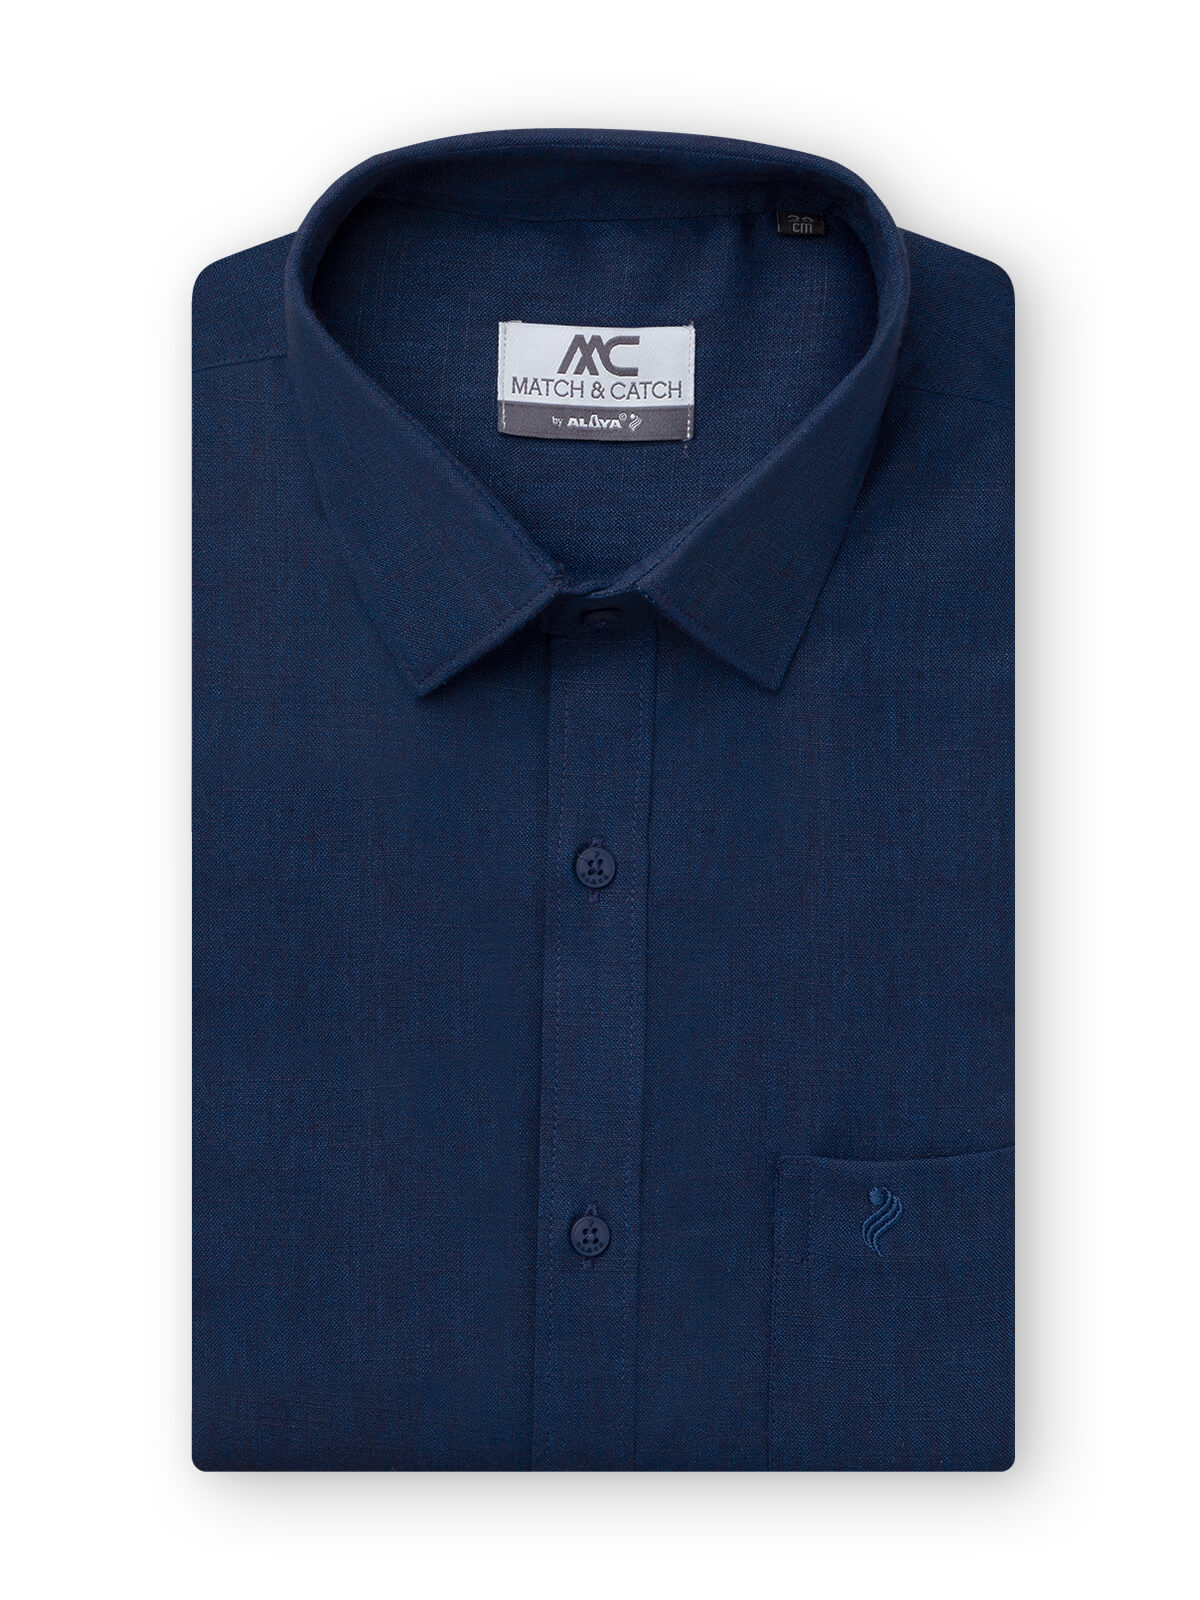 Match & Catch Slim Fit Colour Shirt - Navy Blue